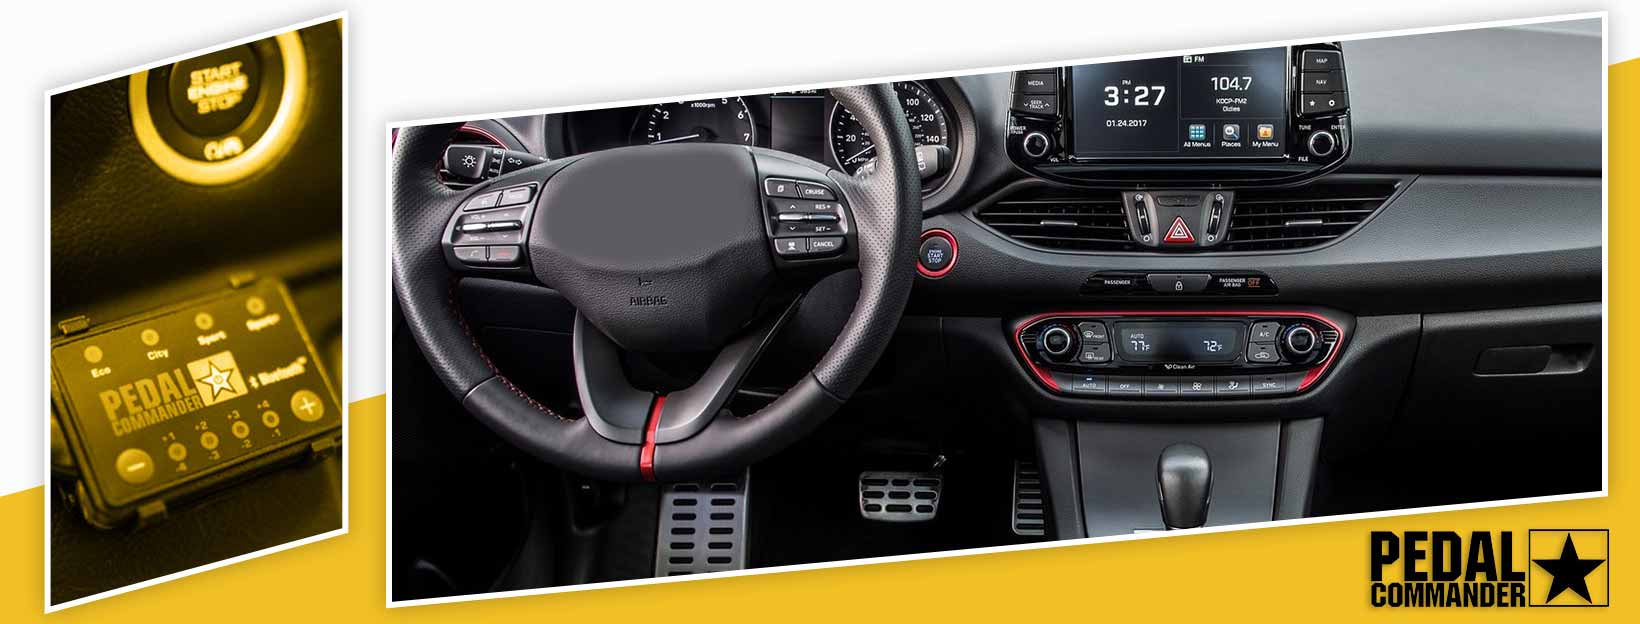 Pedal Commander for Hyundai Elantra GT - interior